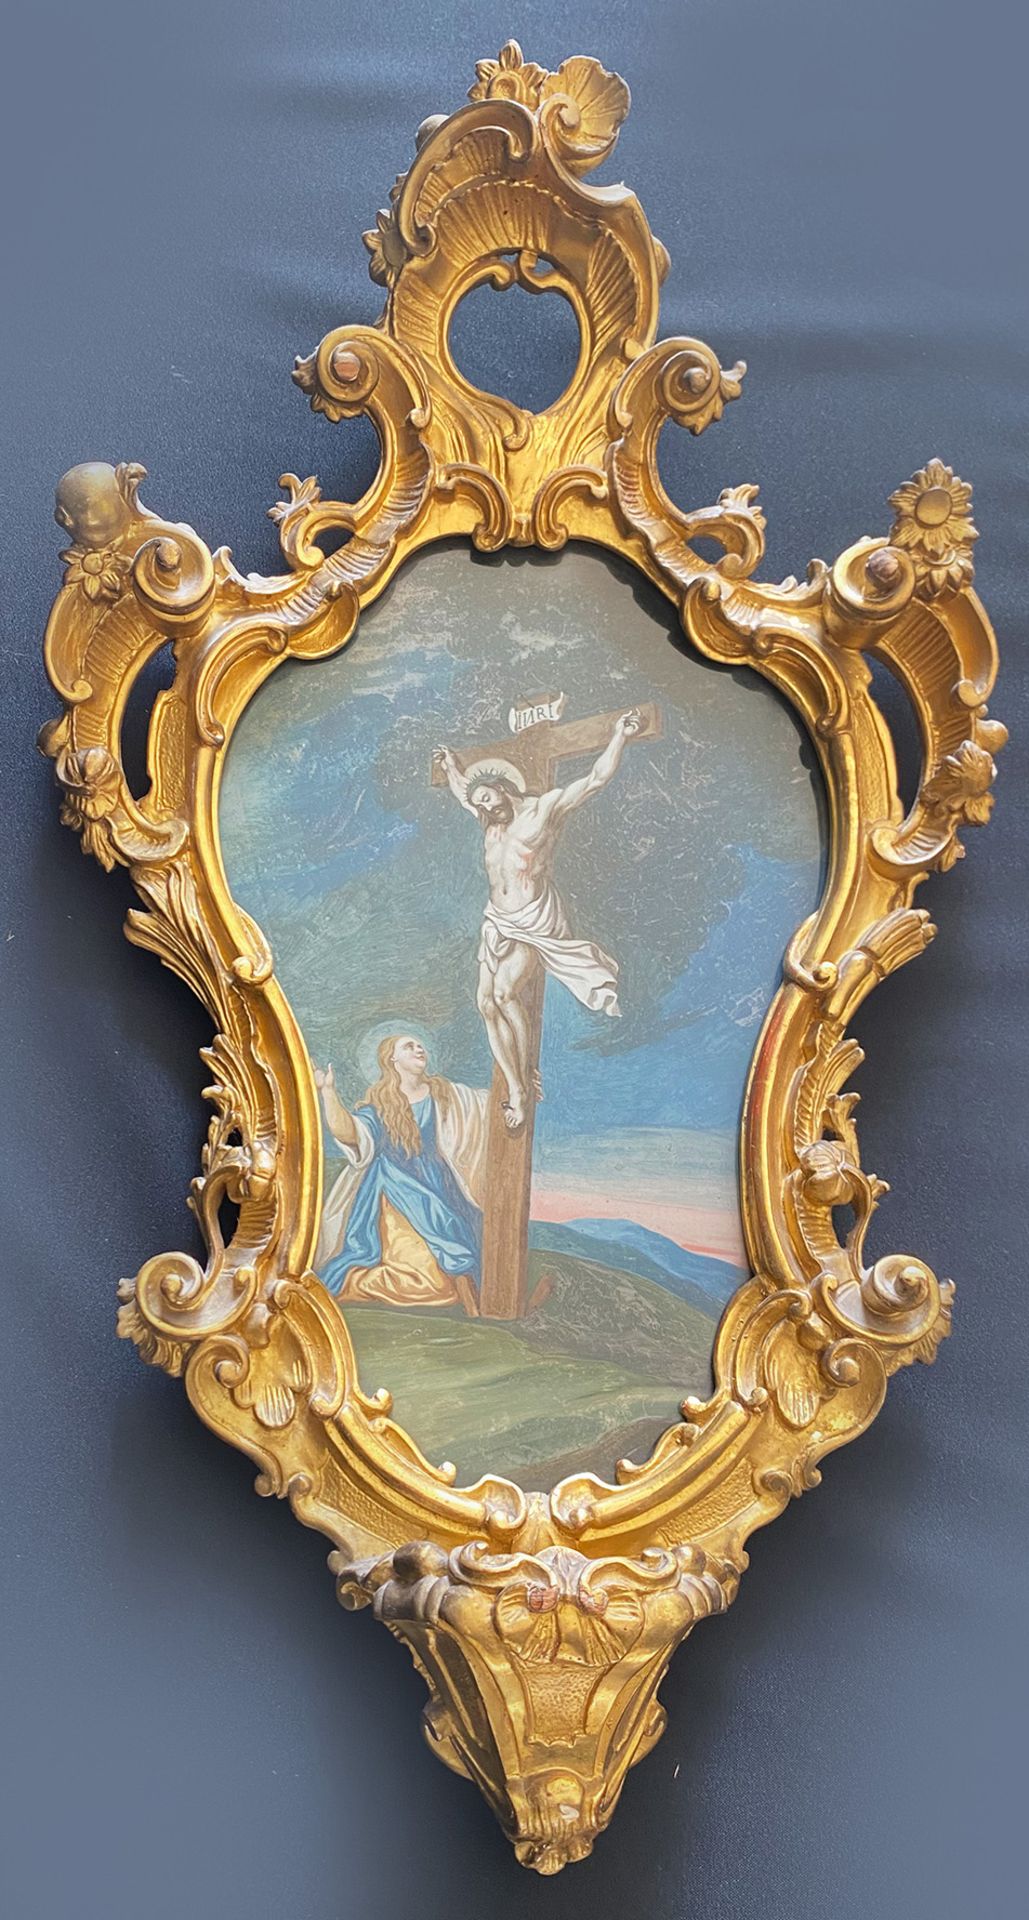 Hinterglasbild in prächtigem ornamentalen Barock-Rahmen, Augsburg, 18. Jh., Christus am Kreuz mit